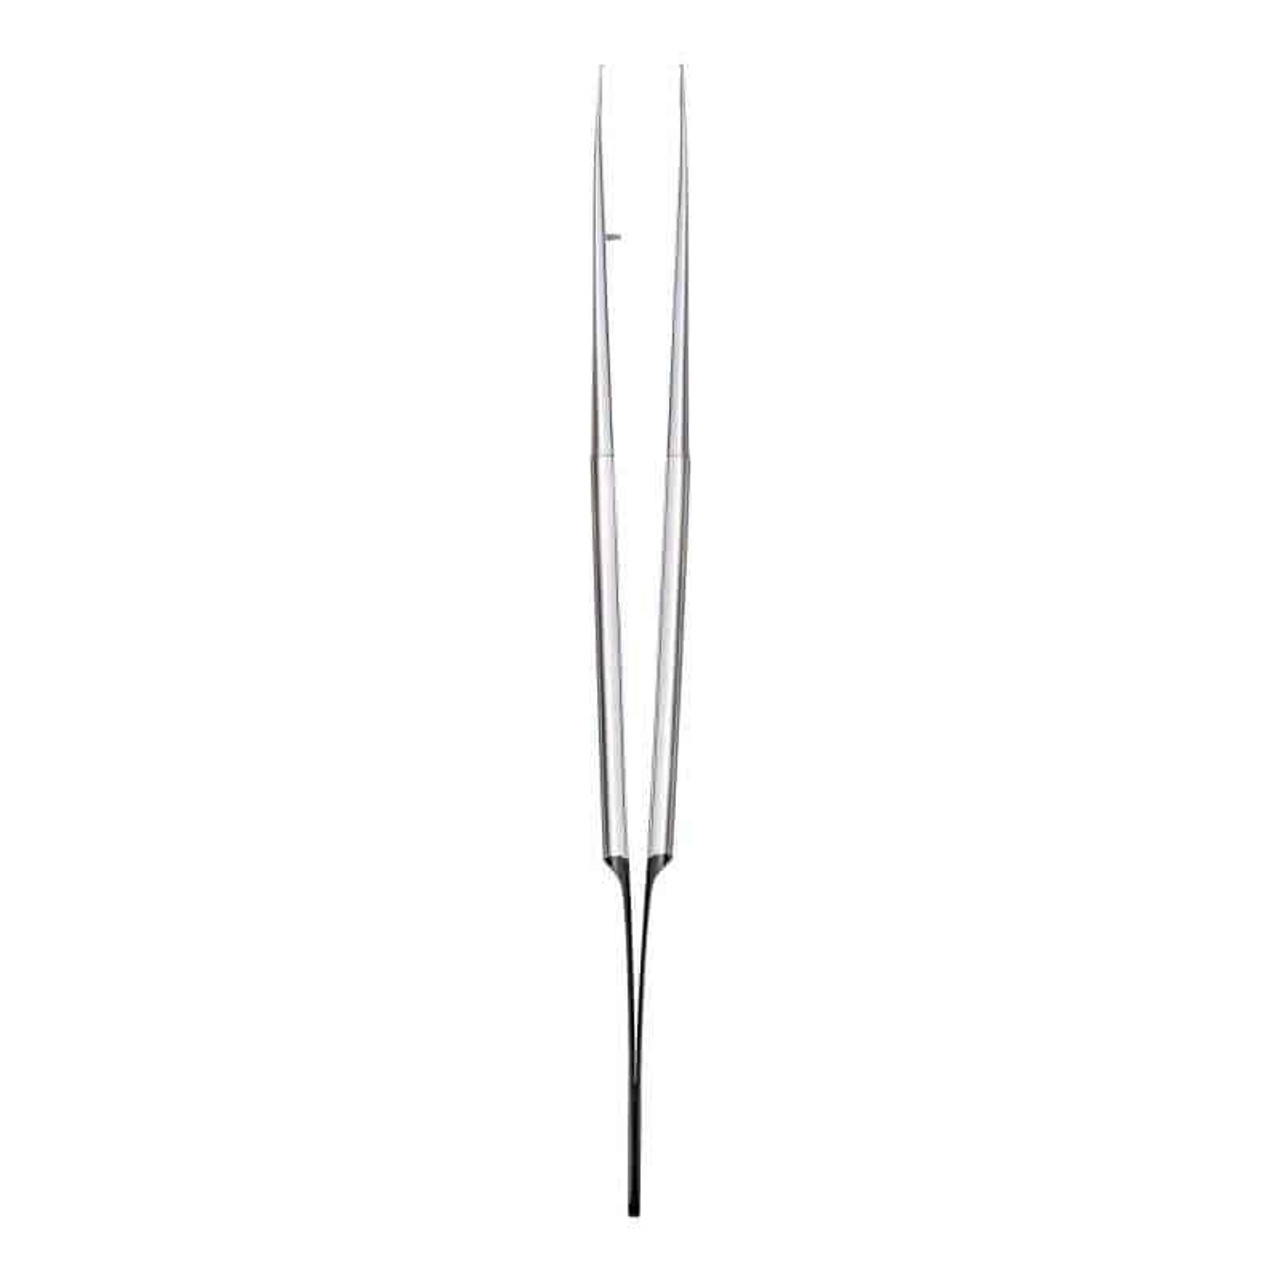 Hu-Friedy - Microsurgical Plier - Anatom. Steel Swiss Perio